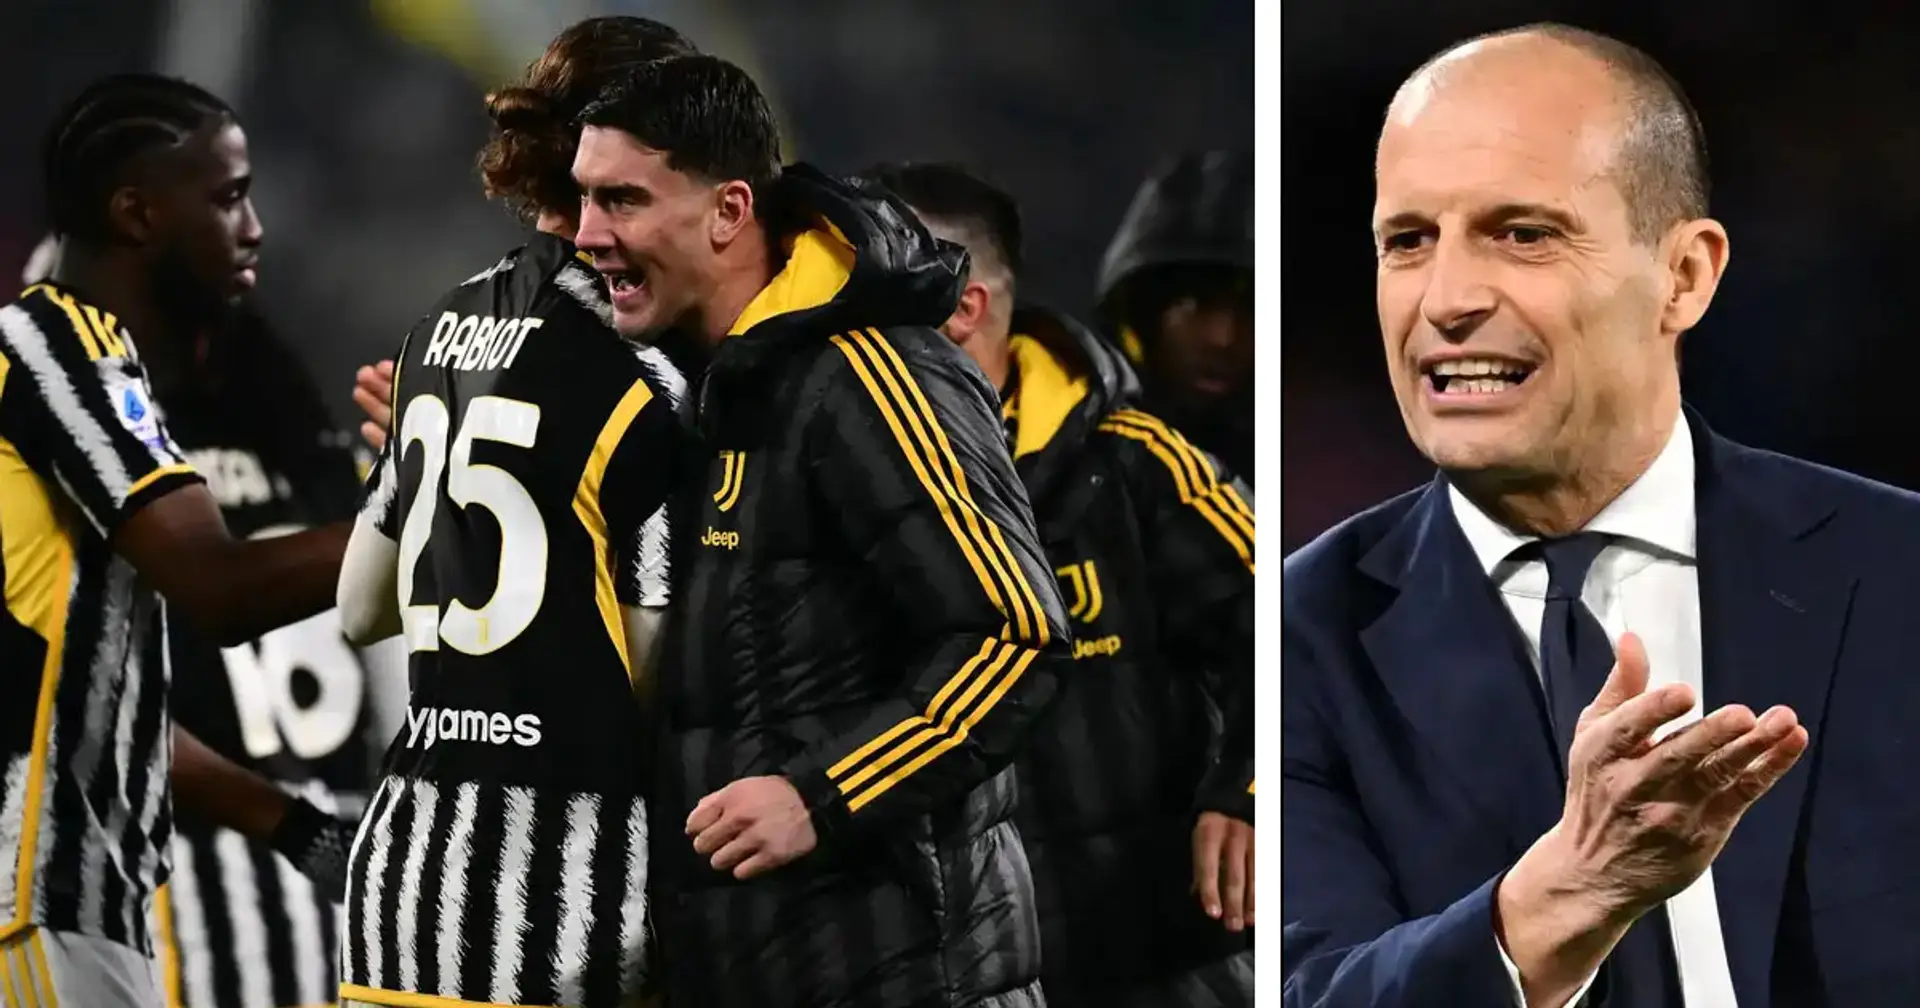 Allegri e l'equilibrio perso alla Juventus: rivelate le gare imputate dal tecnico per il crollo Bianconero